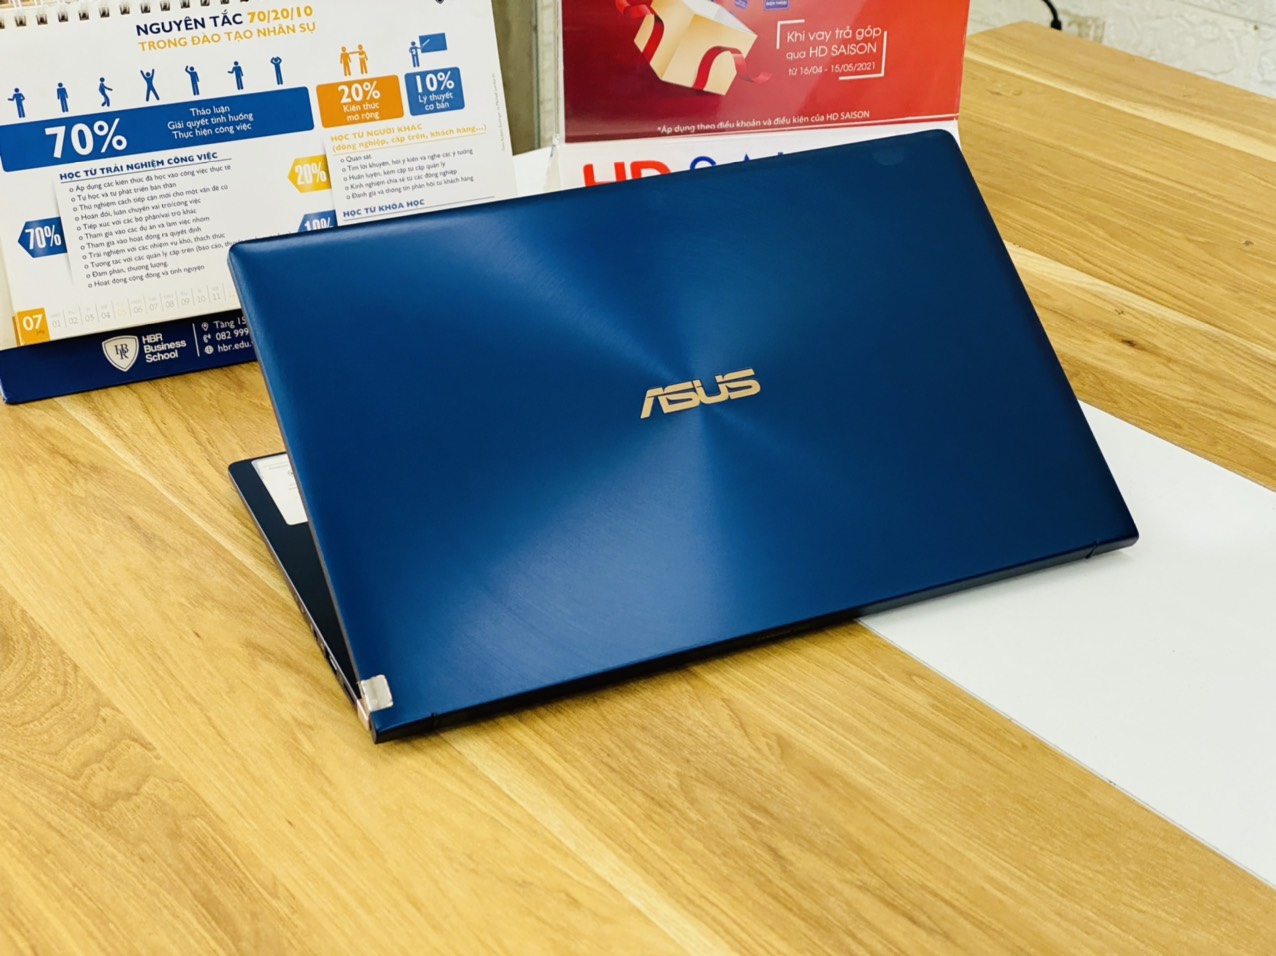 Asus Zenbook UX333FA i5-8265U Ram 8G SSD 256G 13 inch Full HD Viền Mỏng Sang Trọng